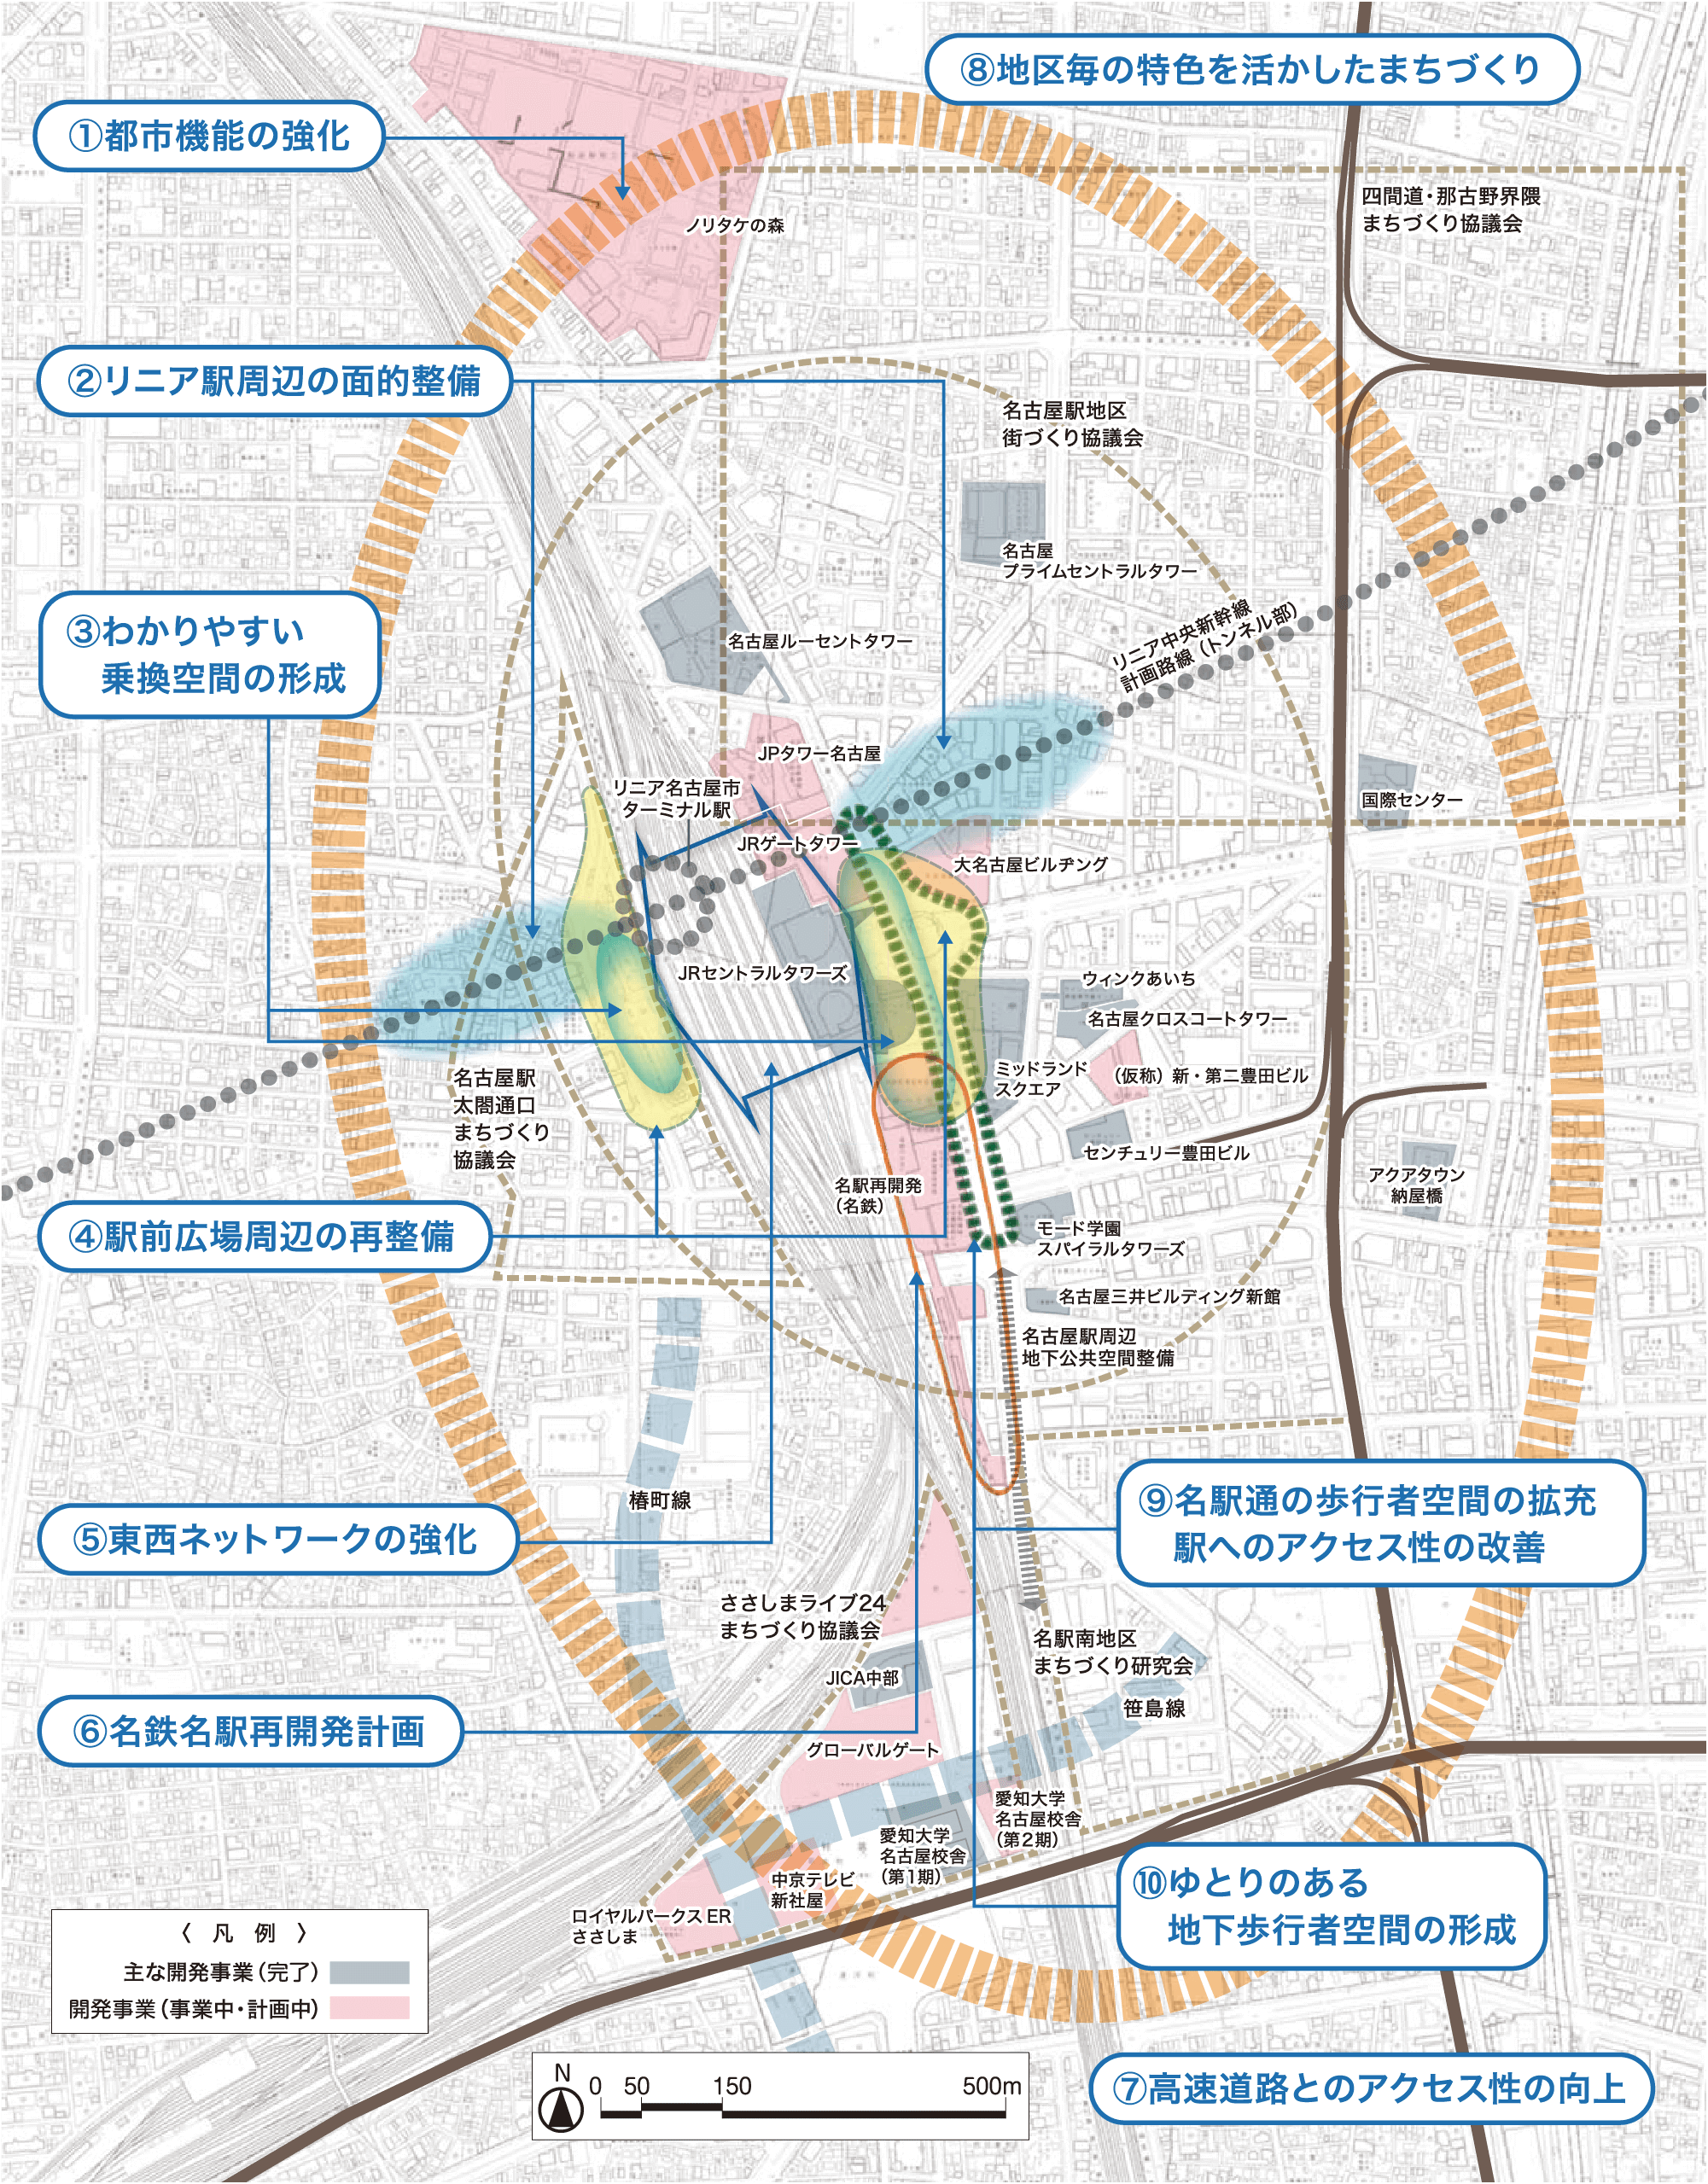 リニア名古屋市ターミナル駅周辺街区整備概念図